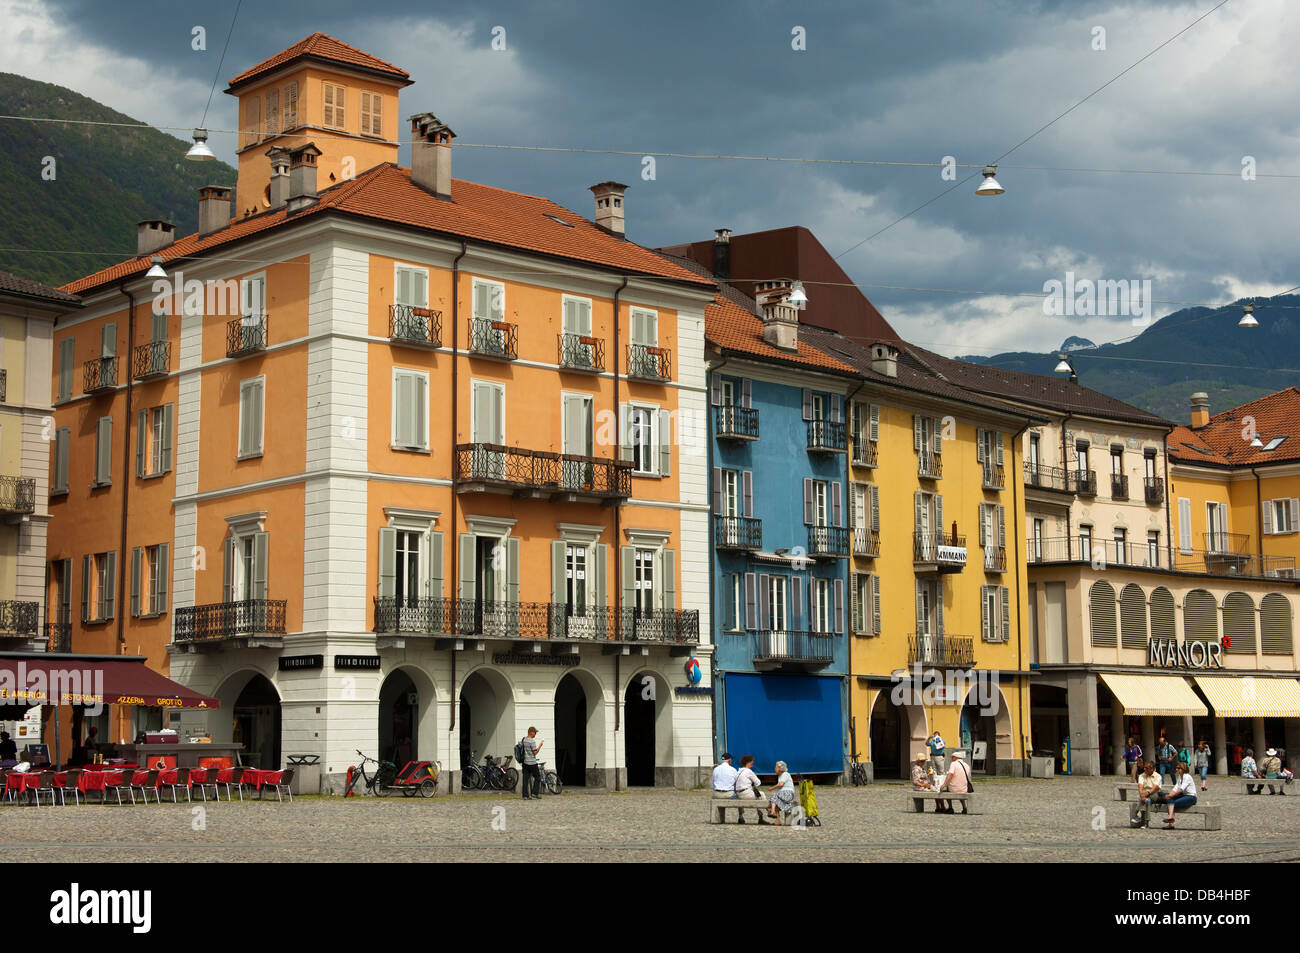 Colourful townhouses at the main square Piazza Grande, Locarno,Ticino, Switzerland Stock Photo